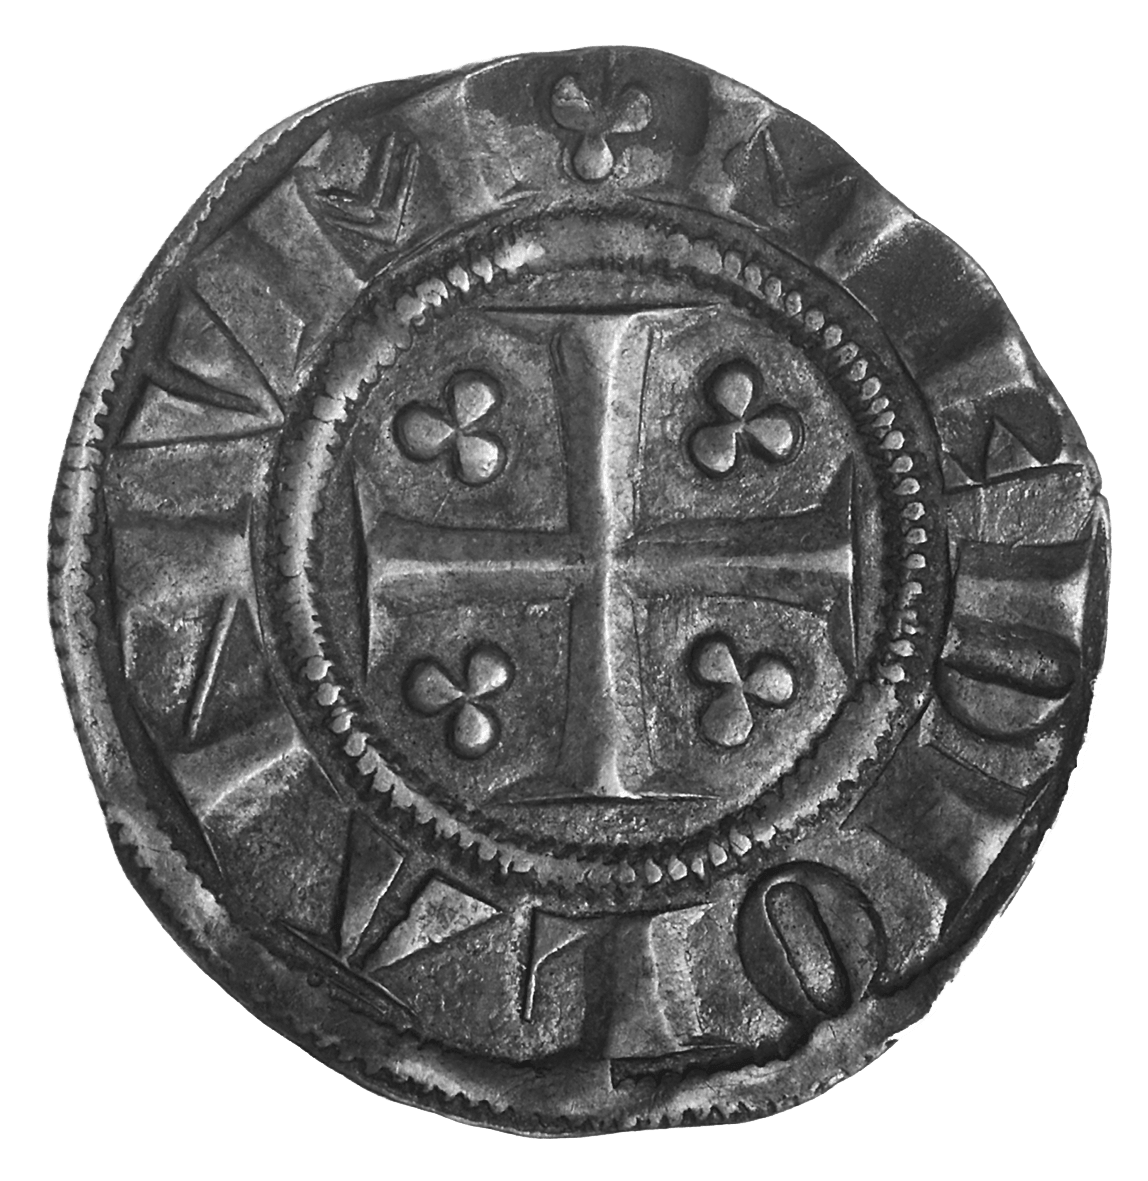 Heiliges Römisches Reich, Republik Mailand, Grosso (obverse)